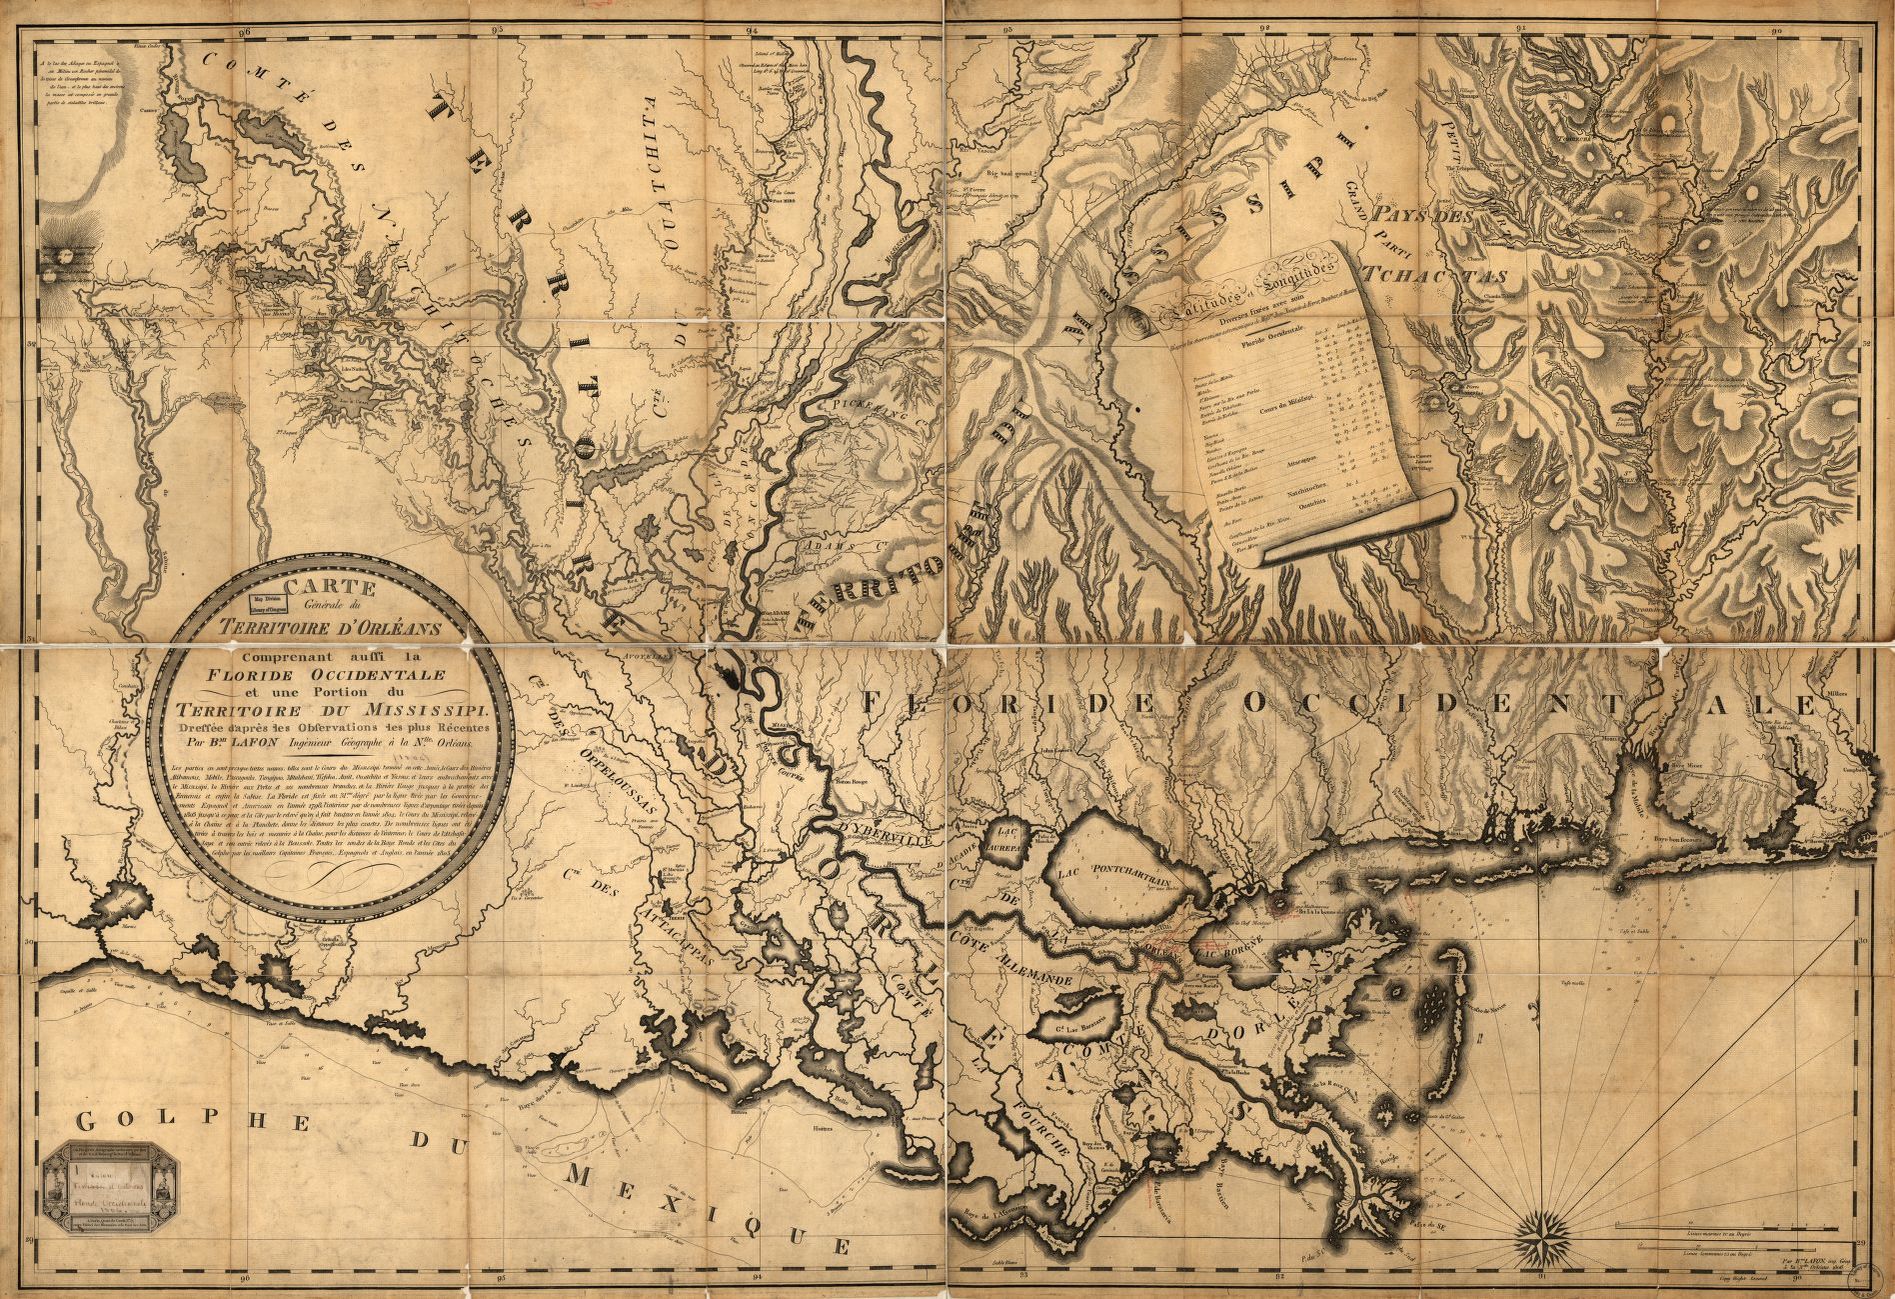 Carte générale du territoire d’Orléans comprenant aussi la Floride Occidentale et une portion du territoire du Mississipi